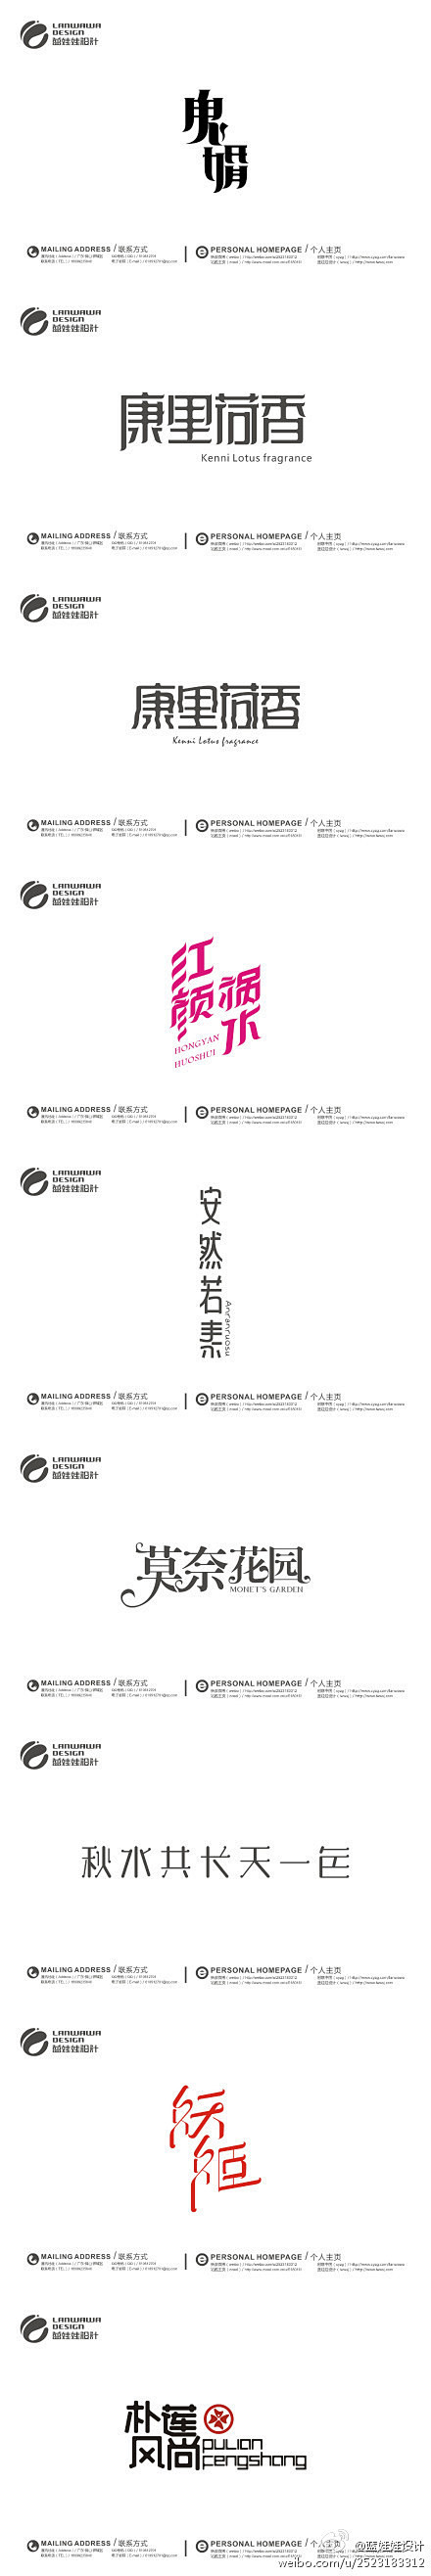 2012下边年字体设计(三)